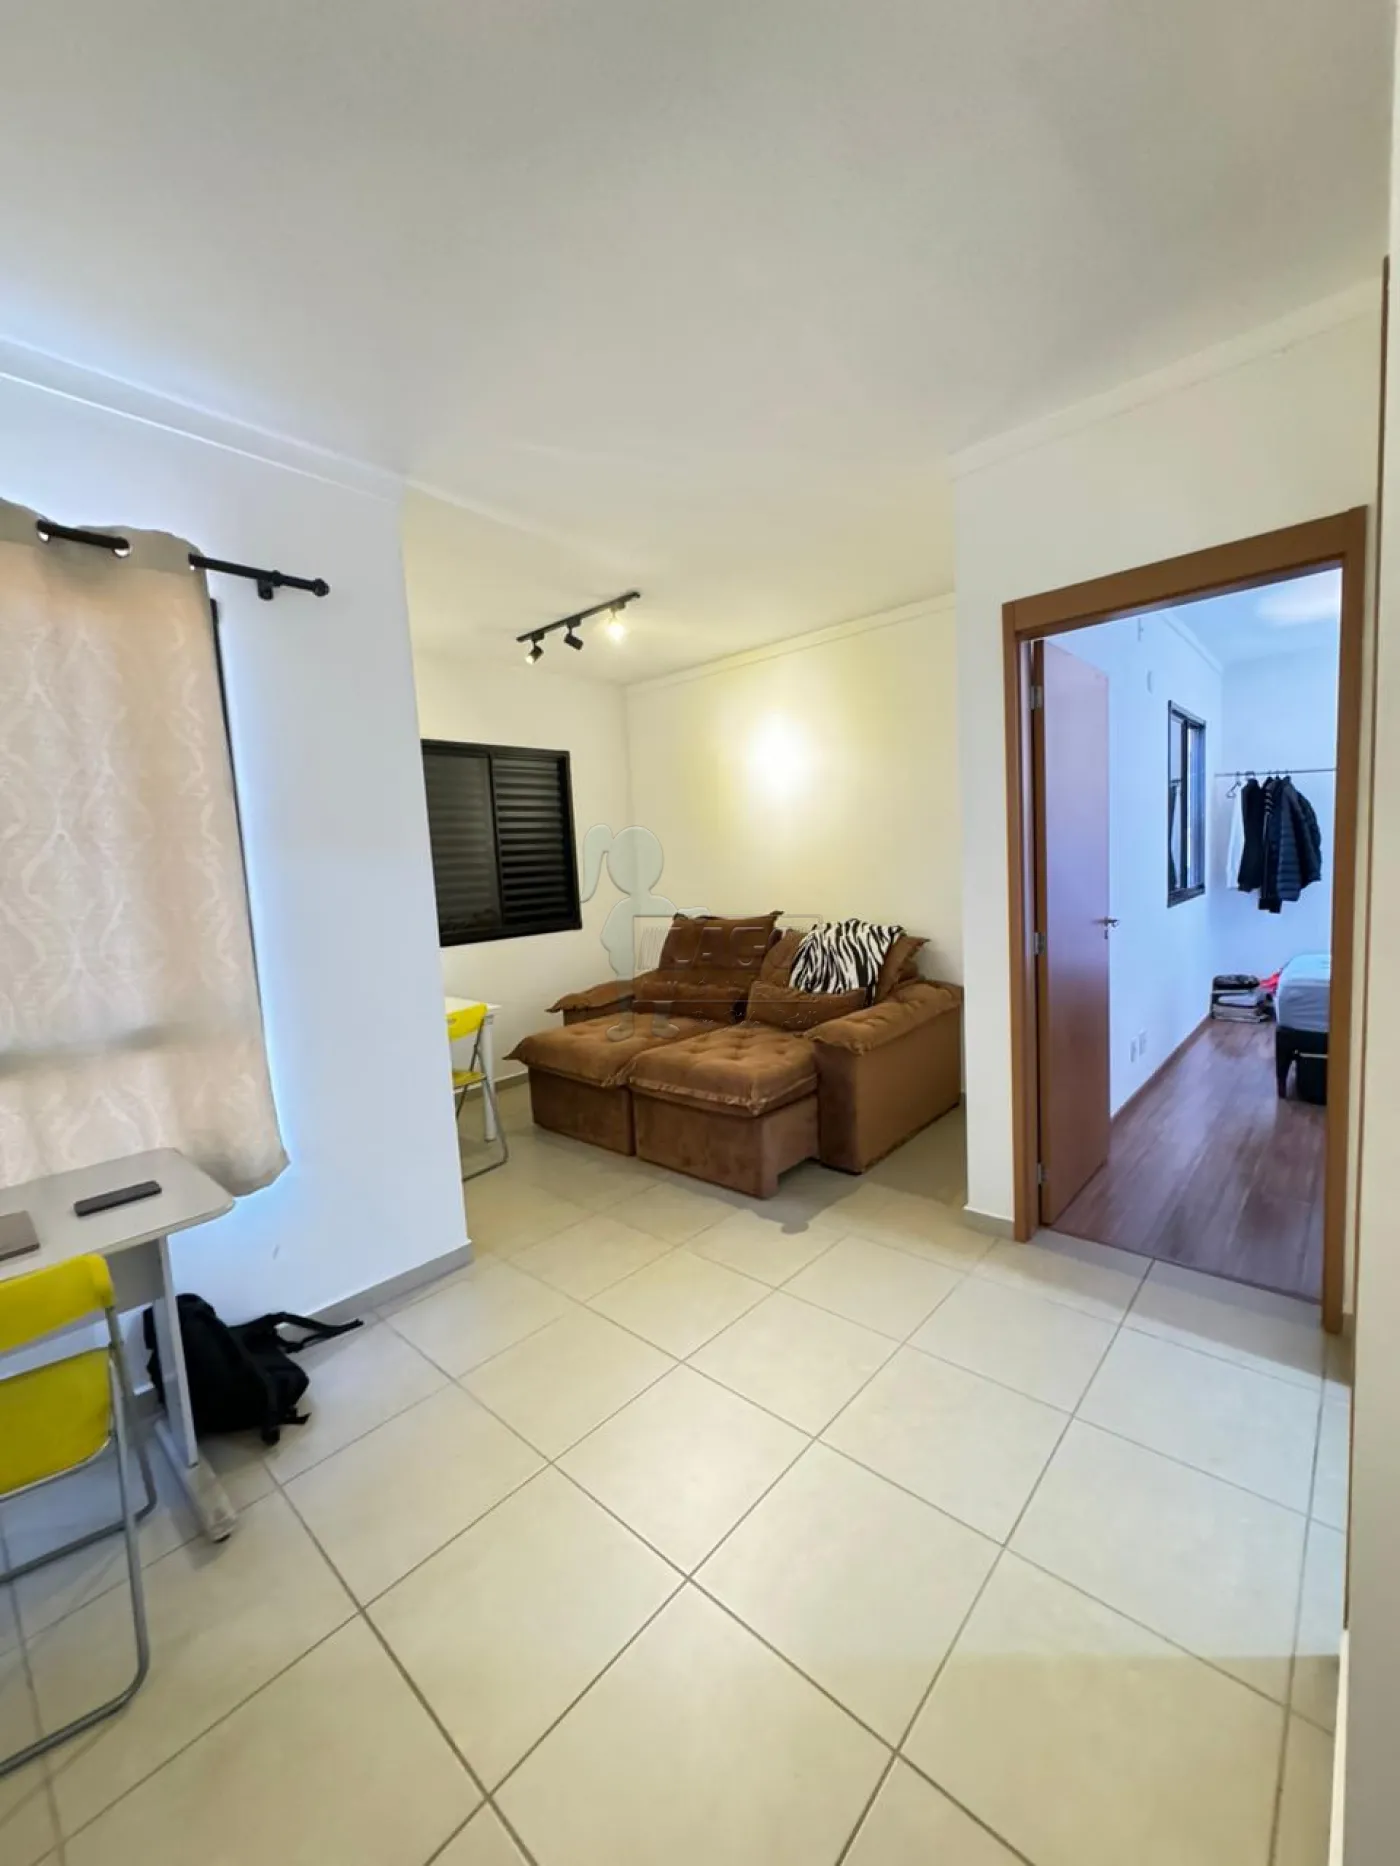 Comprar Apartamentos / Padrão em Ribeirão Preto R$ 205.000,00 - Foto 1